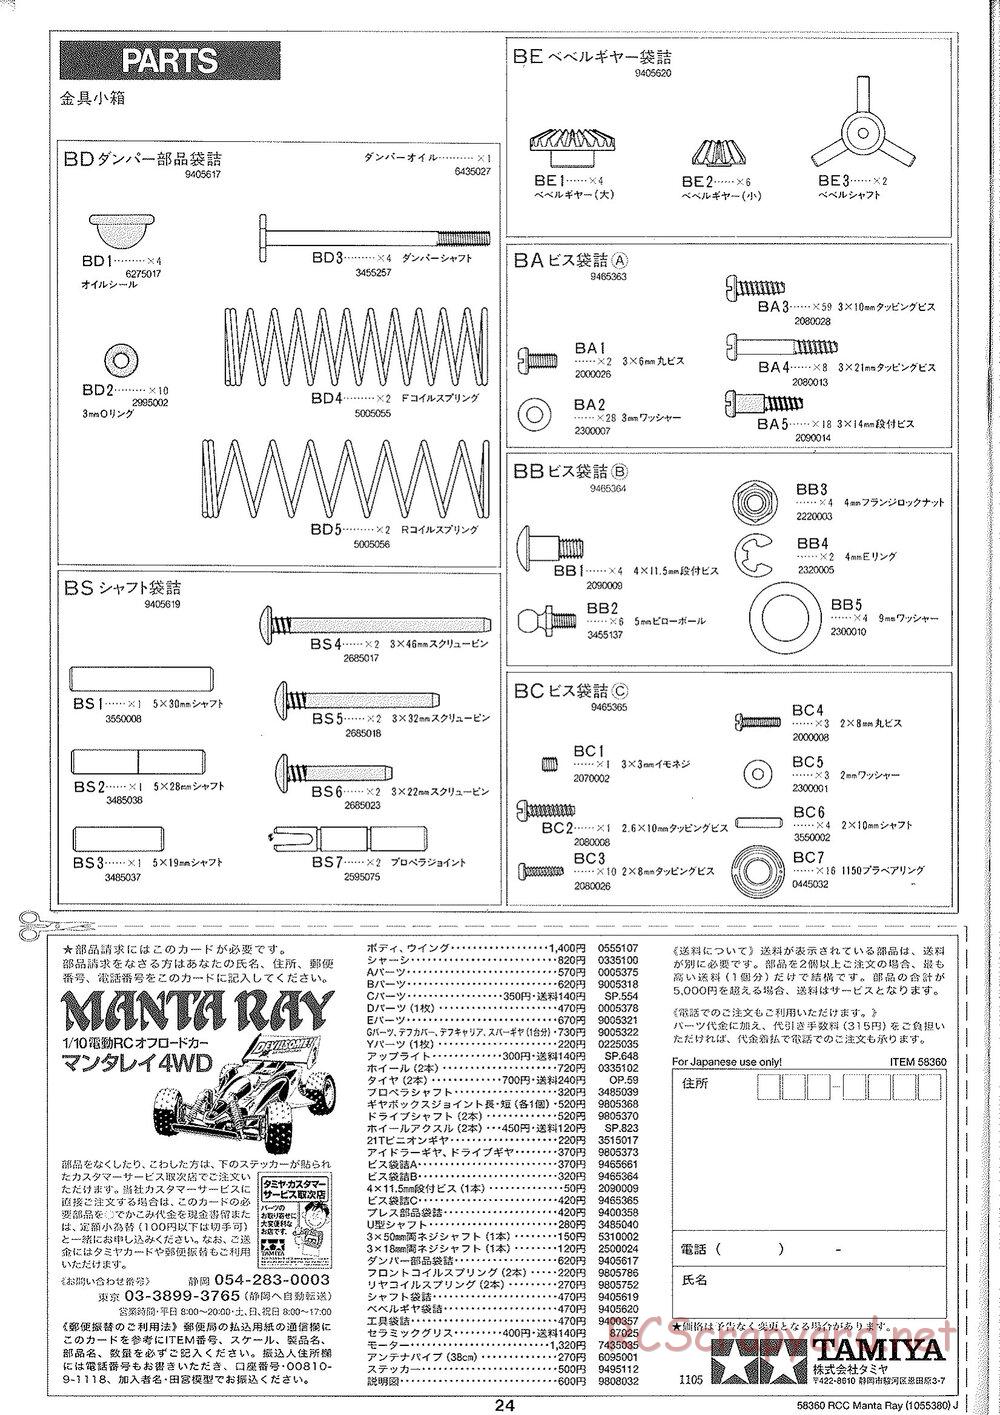 Tamiya - Manta Ray 2005 - DF-01 Chassis - Manual - Page 25